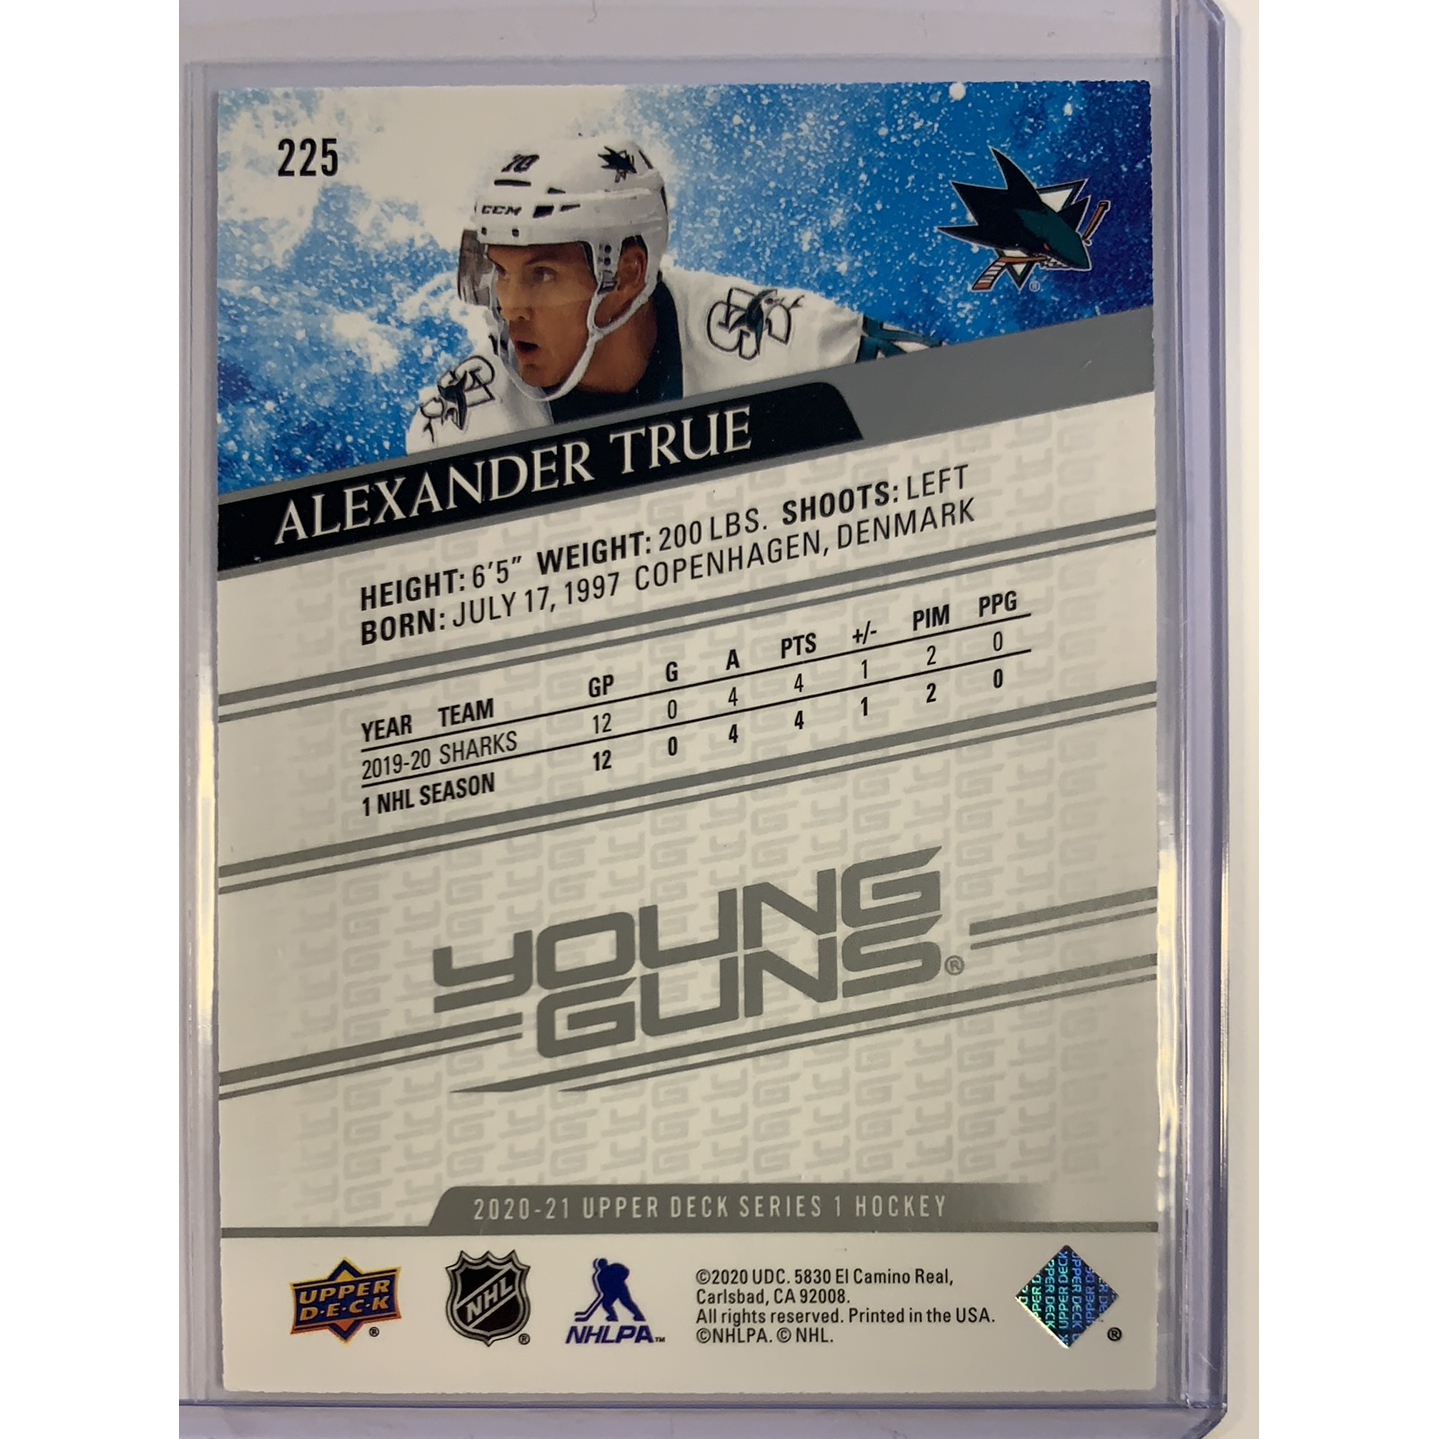  2020-21 Upper Deck Series 1 Alexander True Young Guns  Local Legends Cards & Collectibles